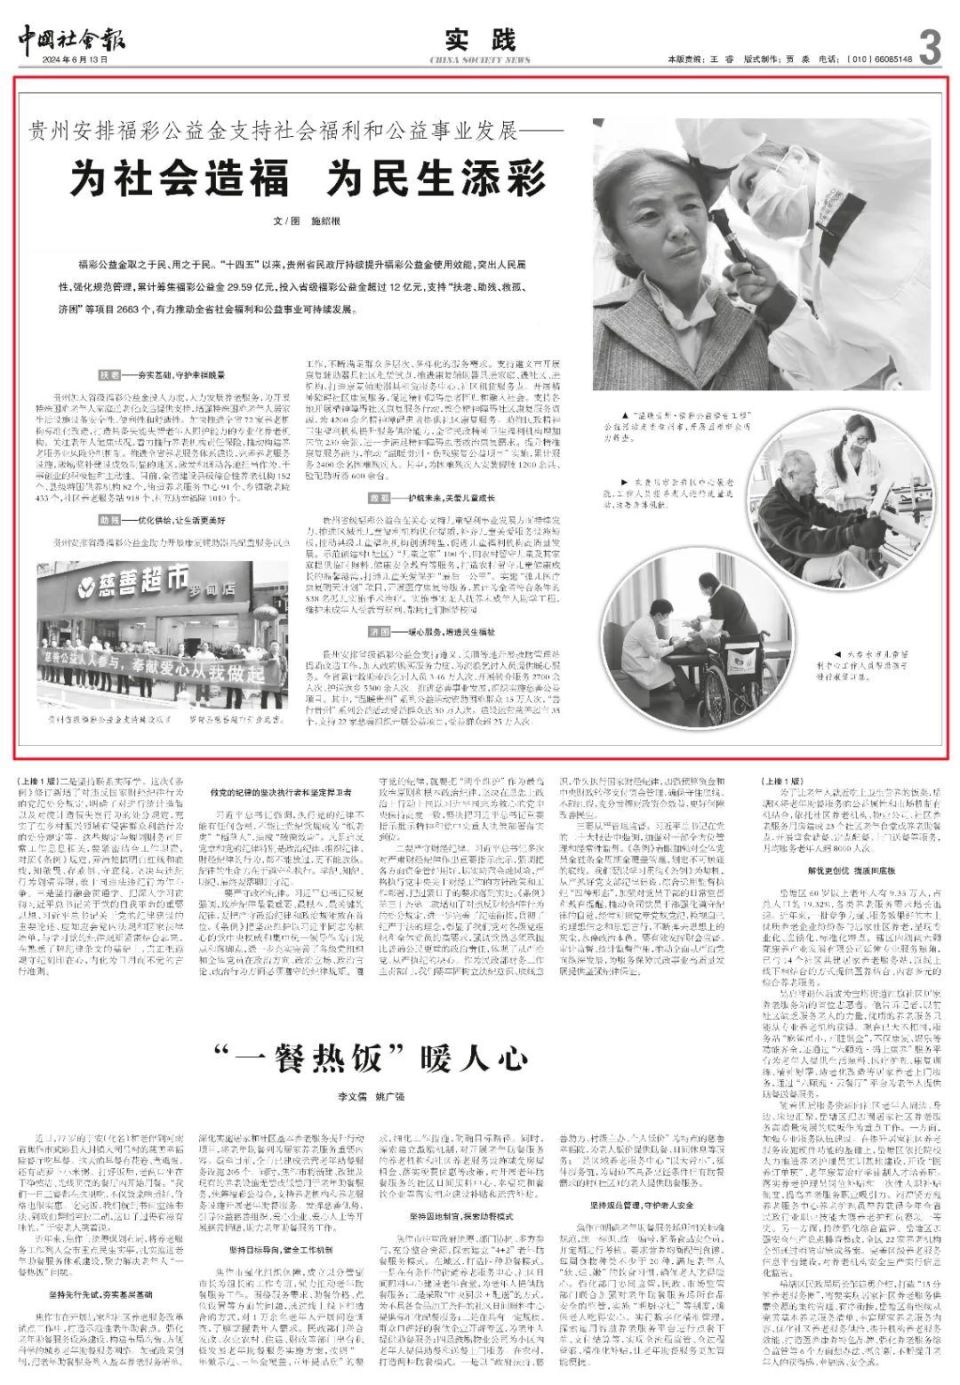 《中国社会报》报眼:贵州安排福彩公益金支持社会福利和公益事业发展